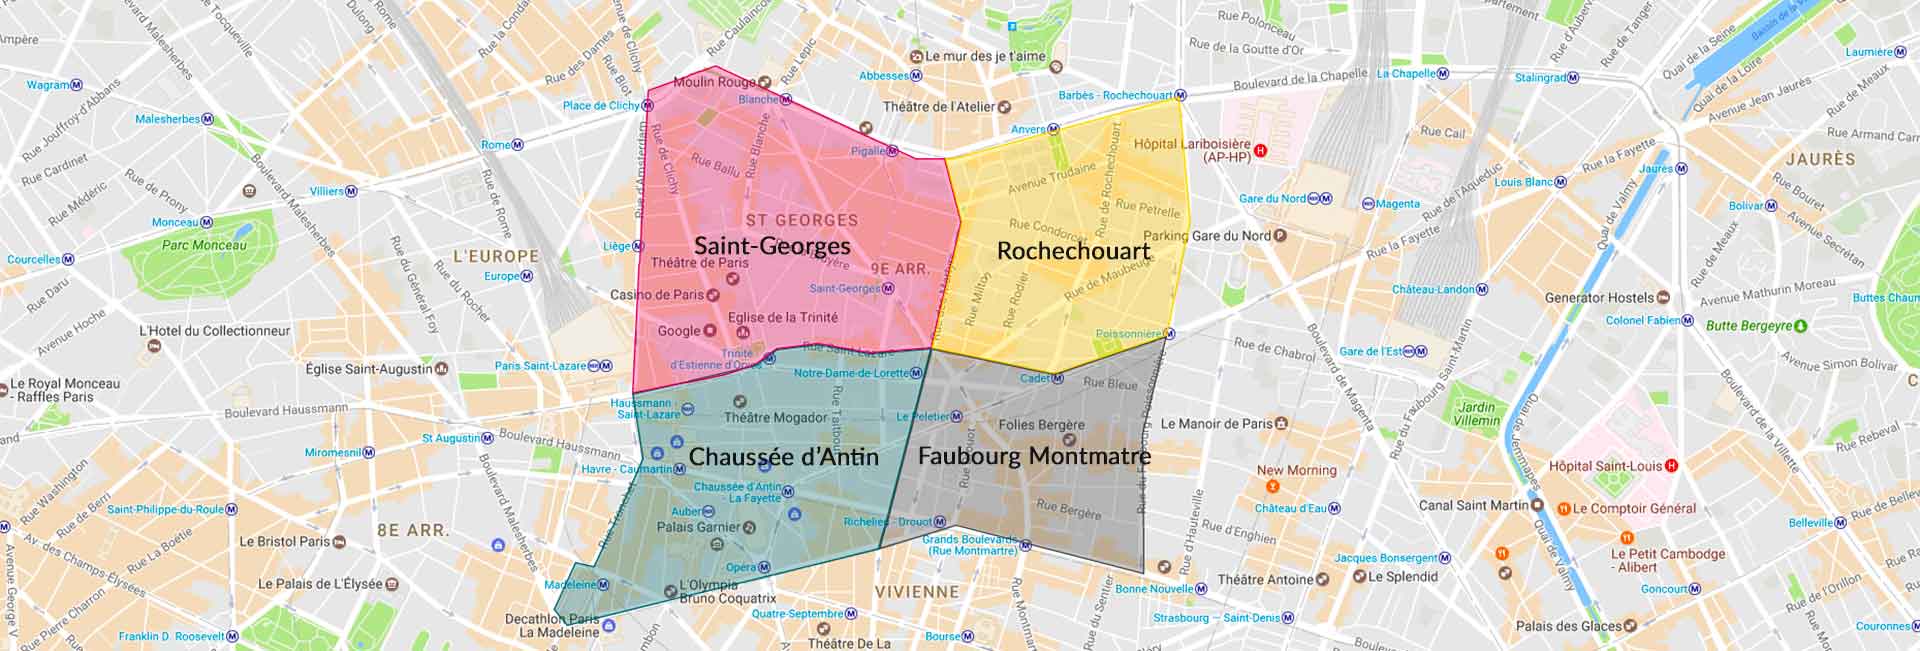 Les quartiers administratifs du 9e arrondissement paris